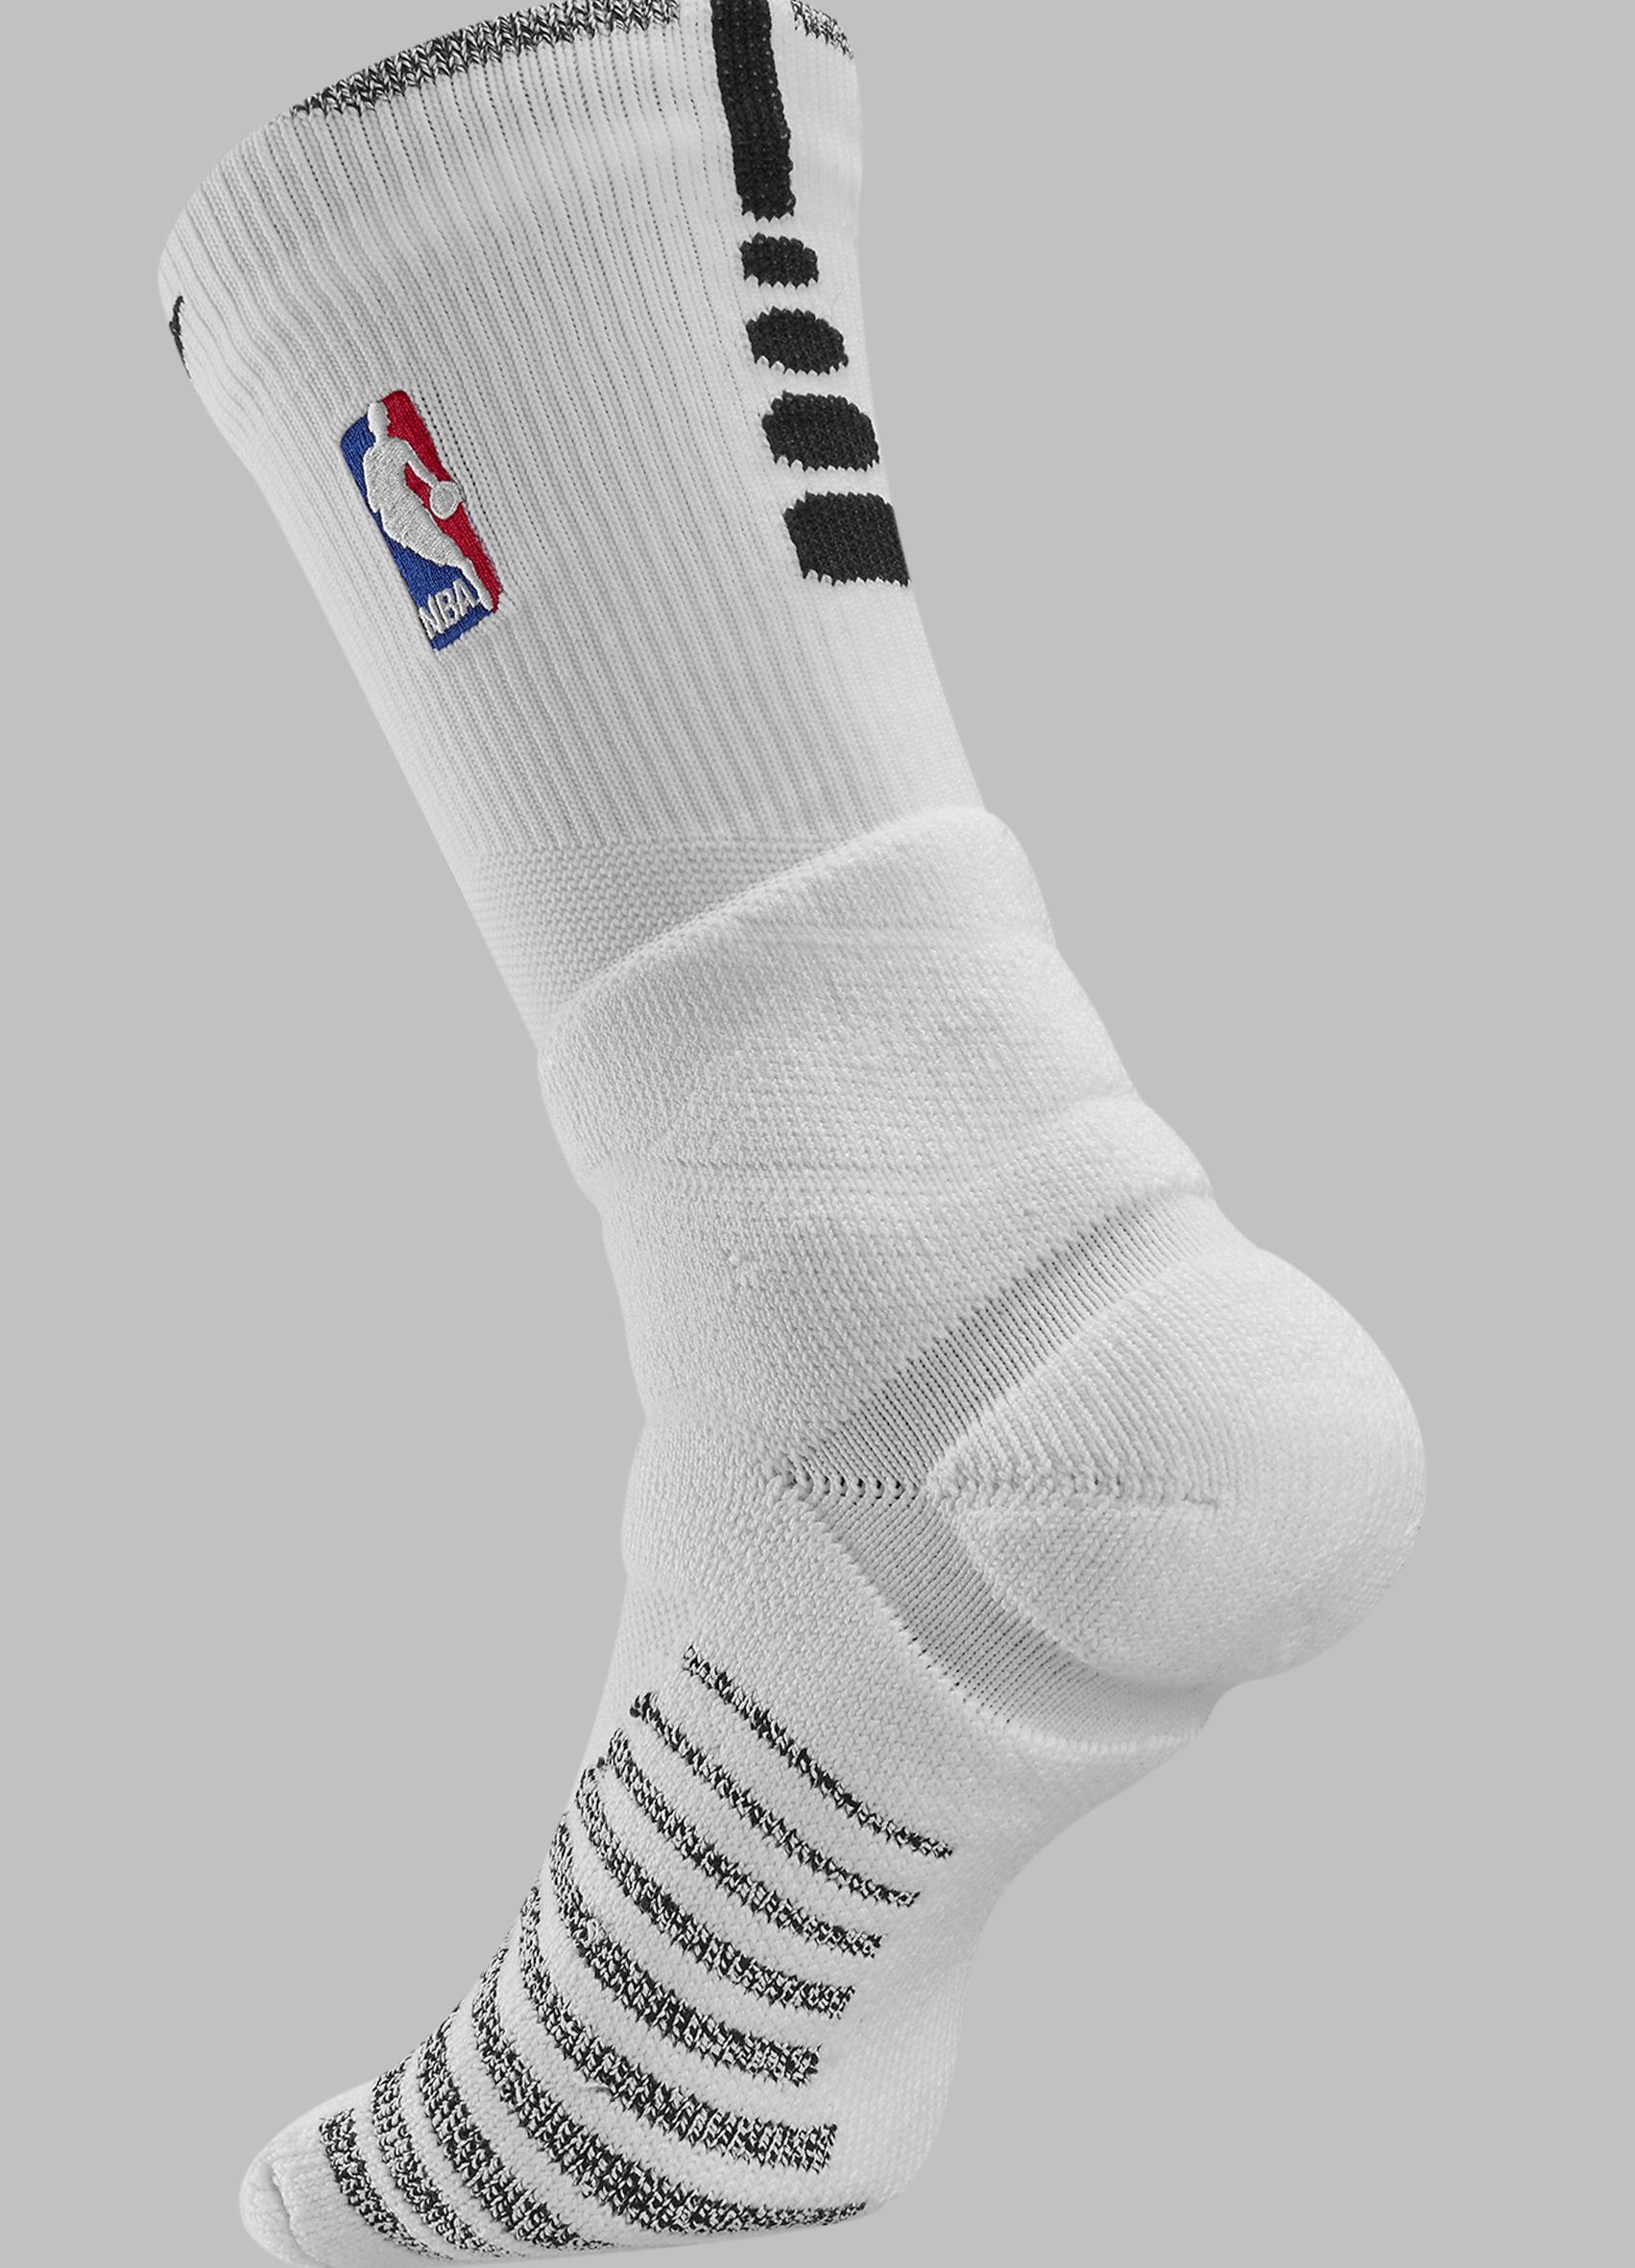 Nike's Fresh NBA Socks: All In Details | SGB Media